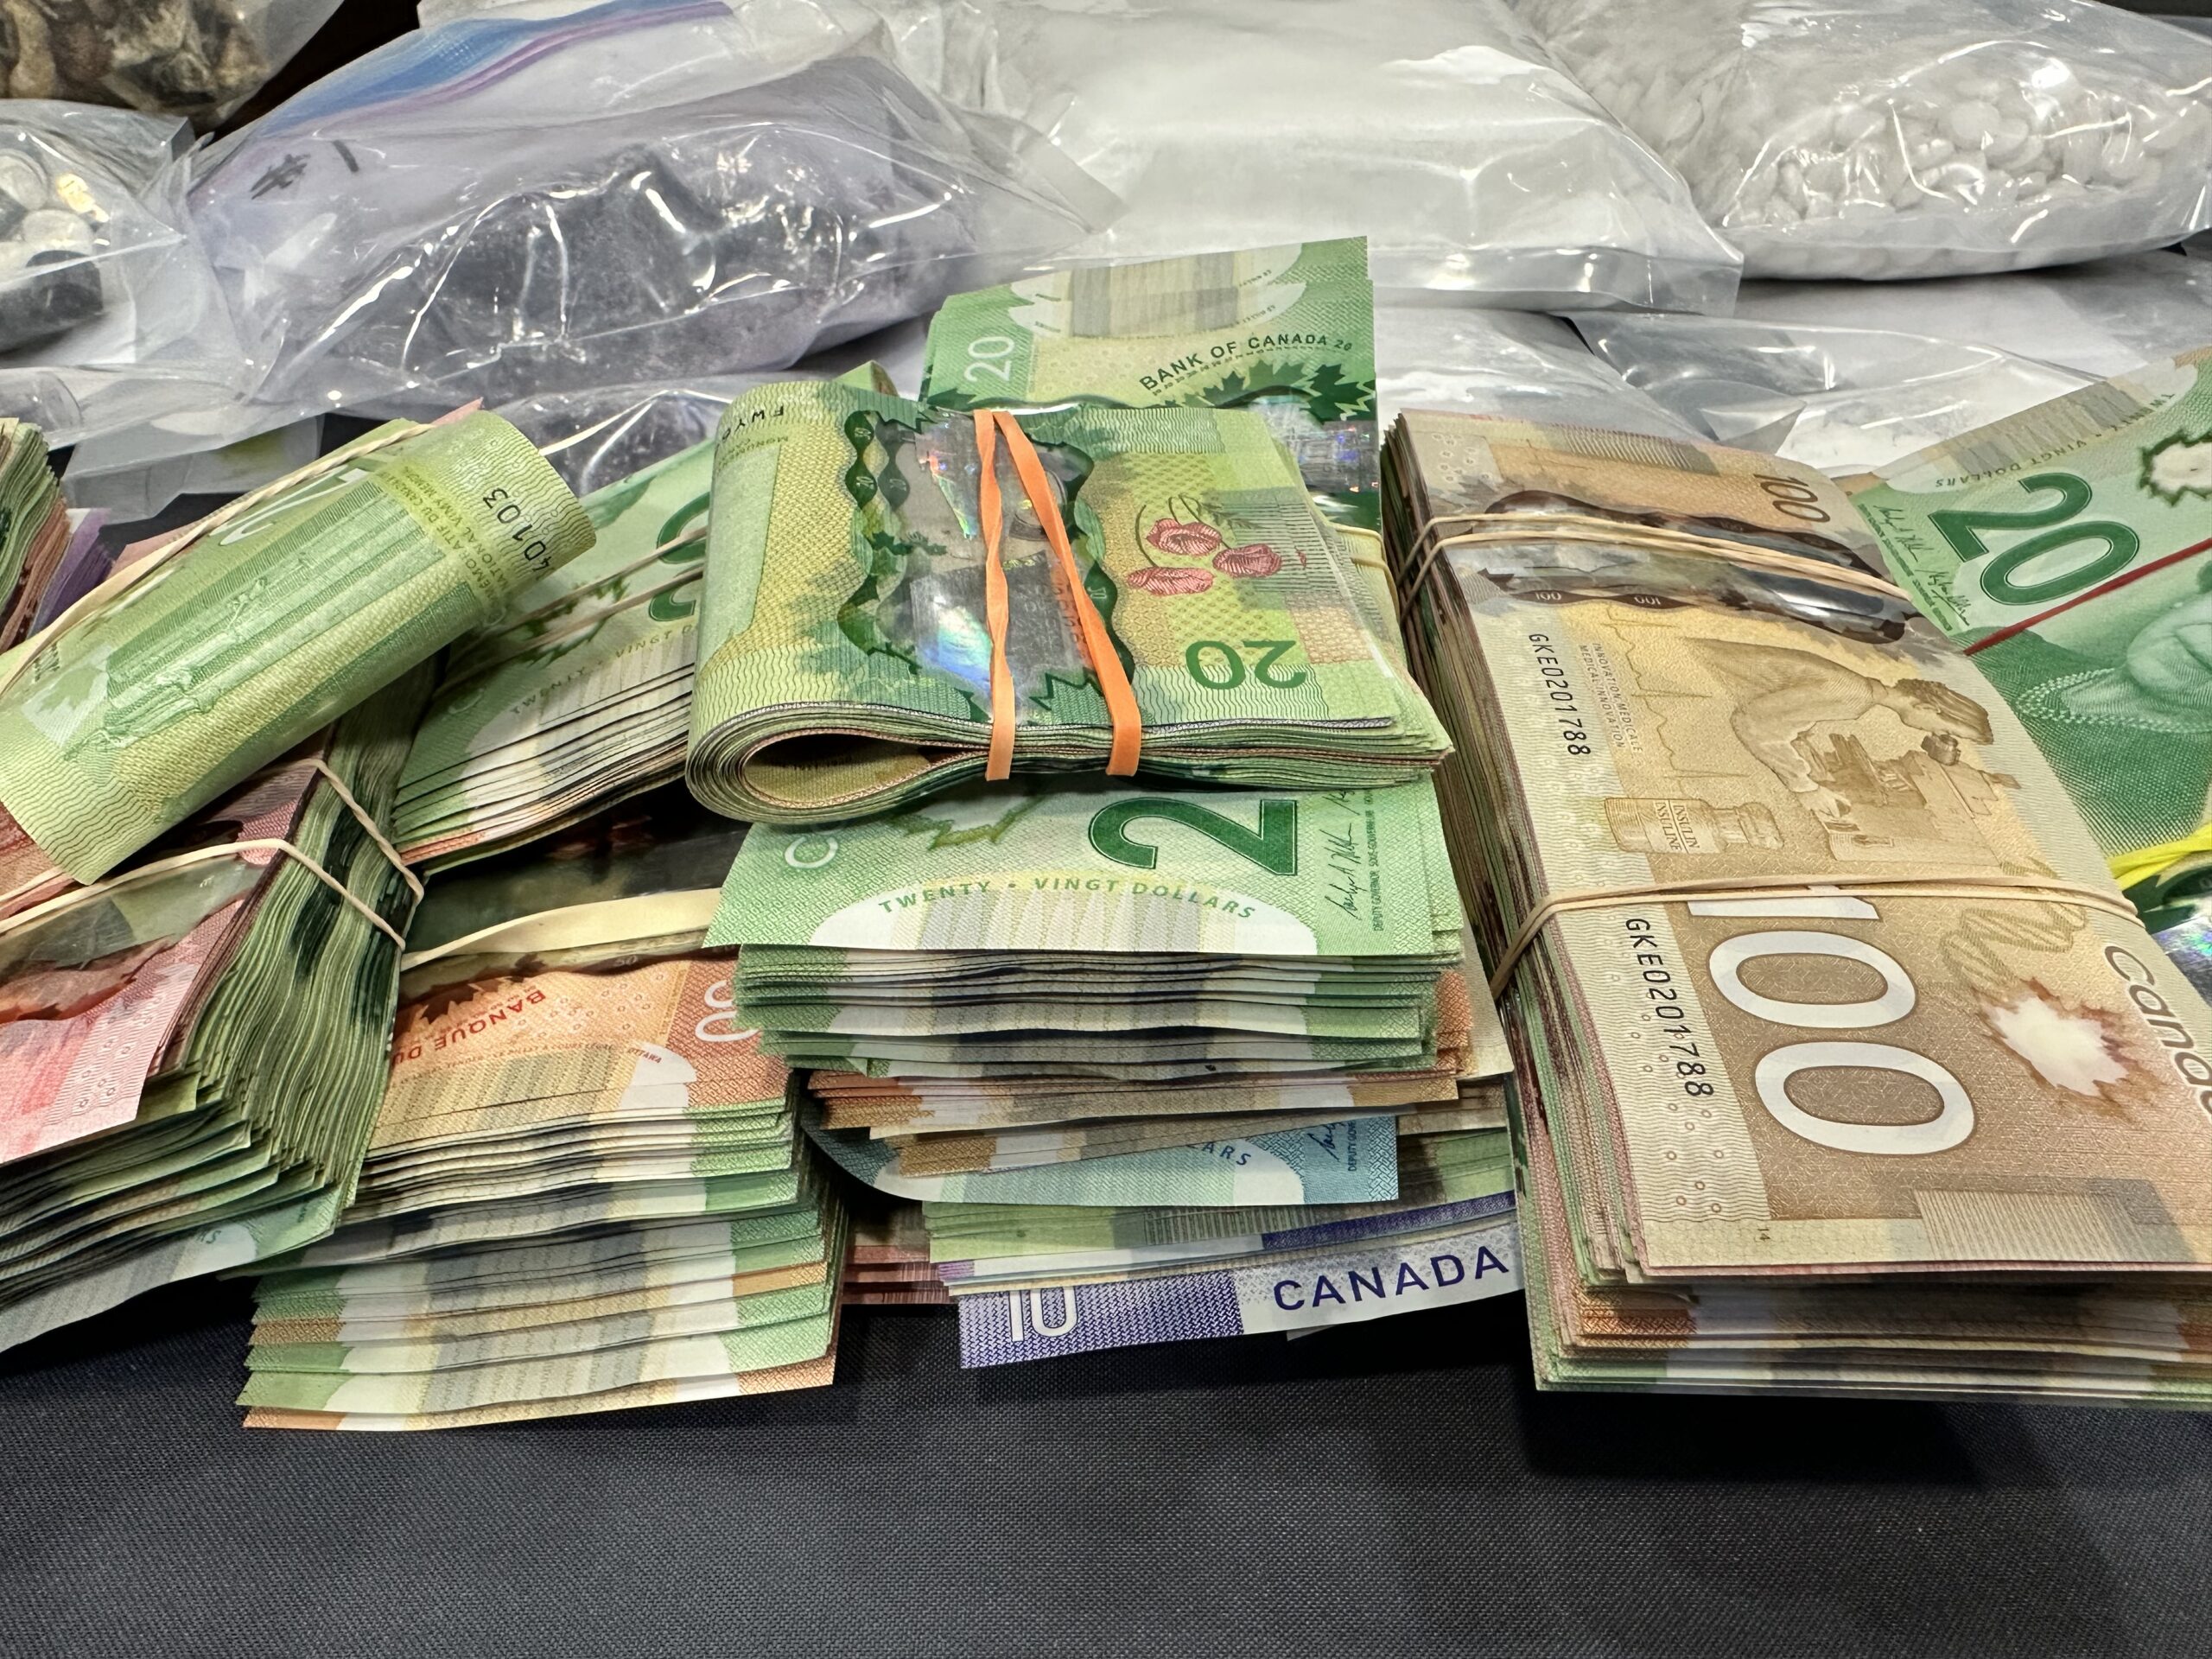 Large amount of cash and assets seized in Edmonton drug bust